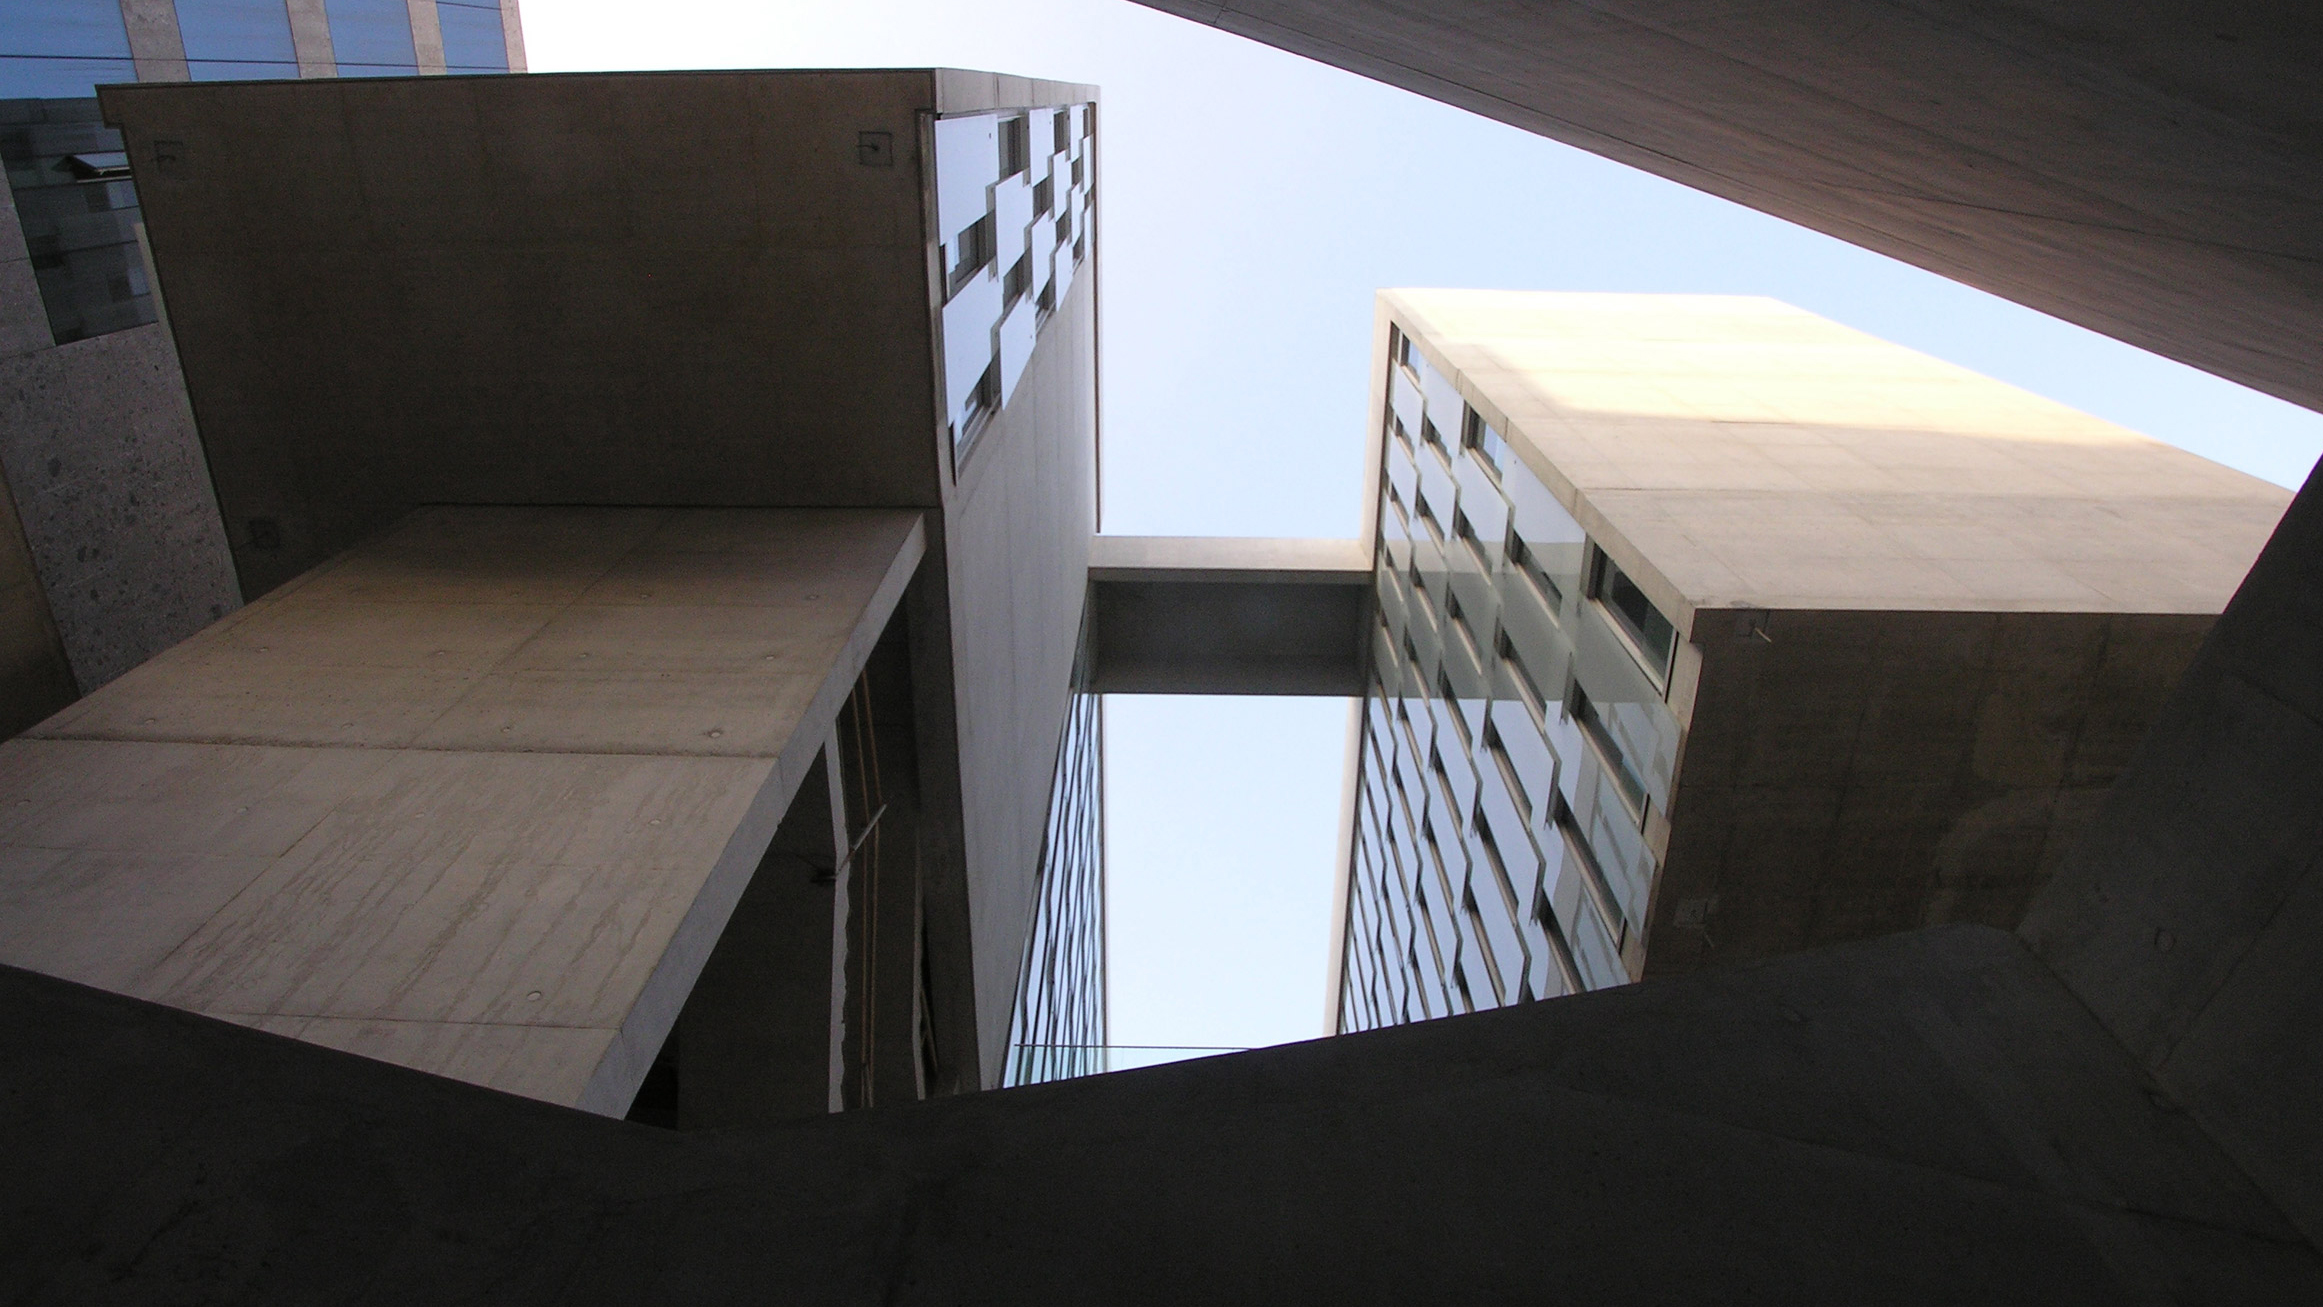 University Luigi Bocconi, designed by Grafton Architects. 